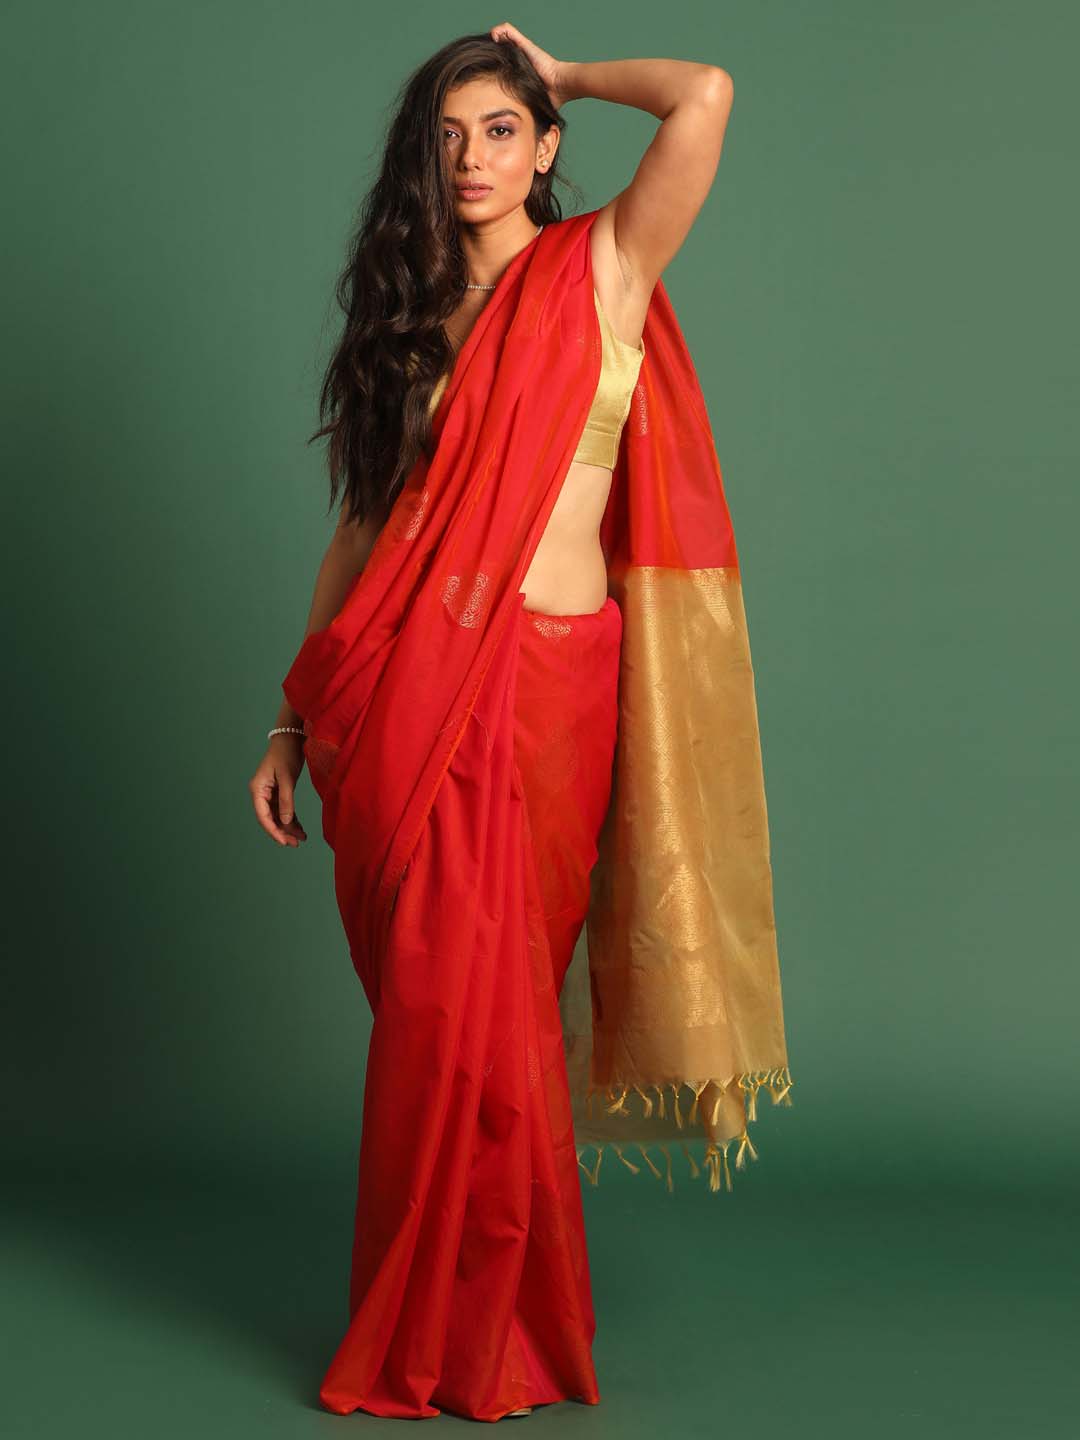 Indethnic Red Pochampally Kora Silk by Cotton Saree - View 1